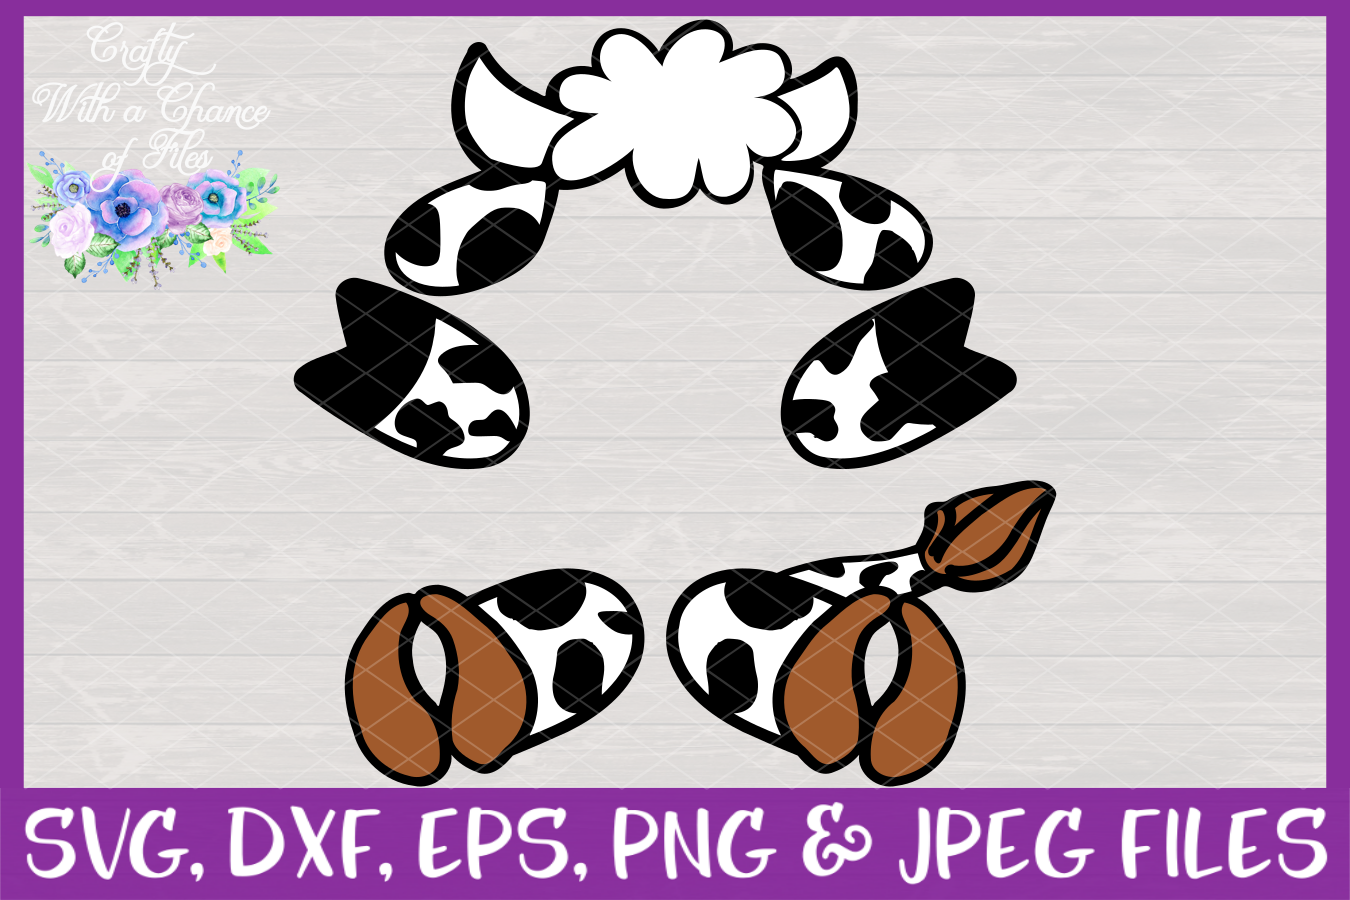 Download Cow Monogram SVG - Easter Basket Design (16598) | SVGs ...